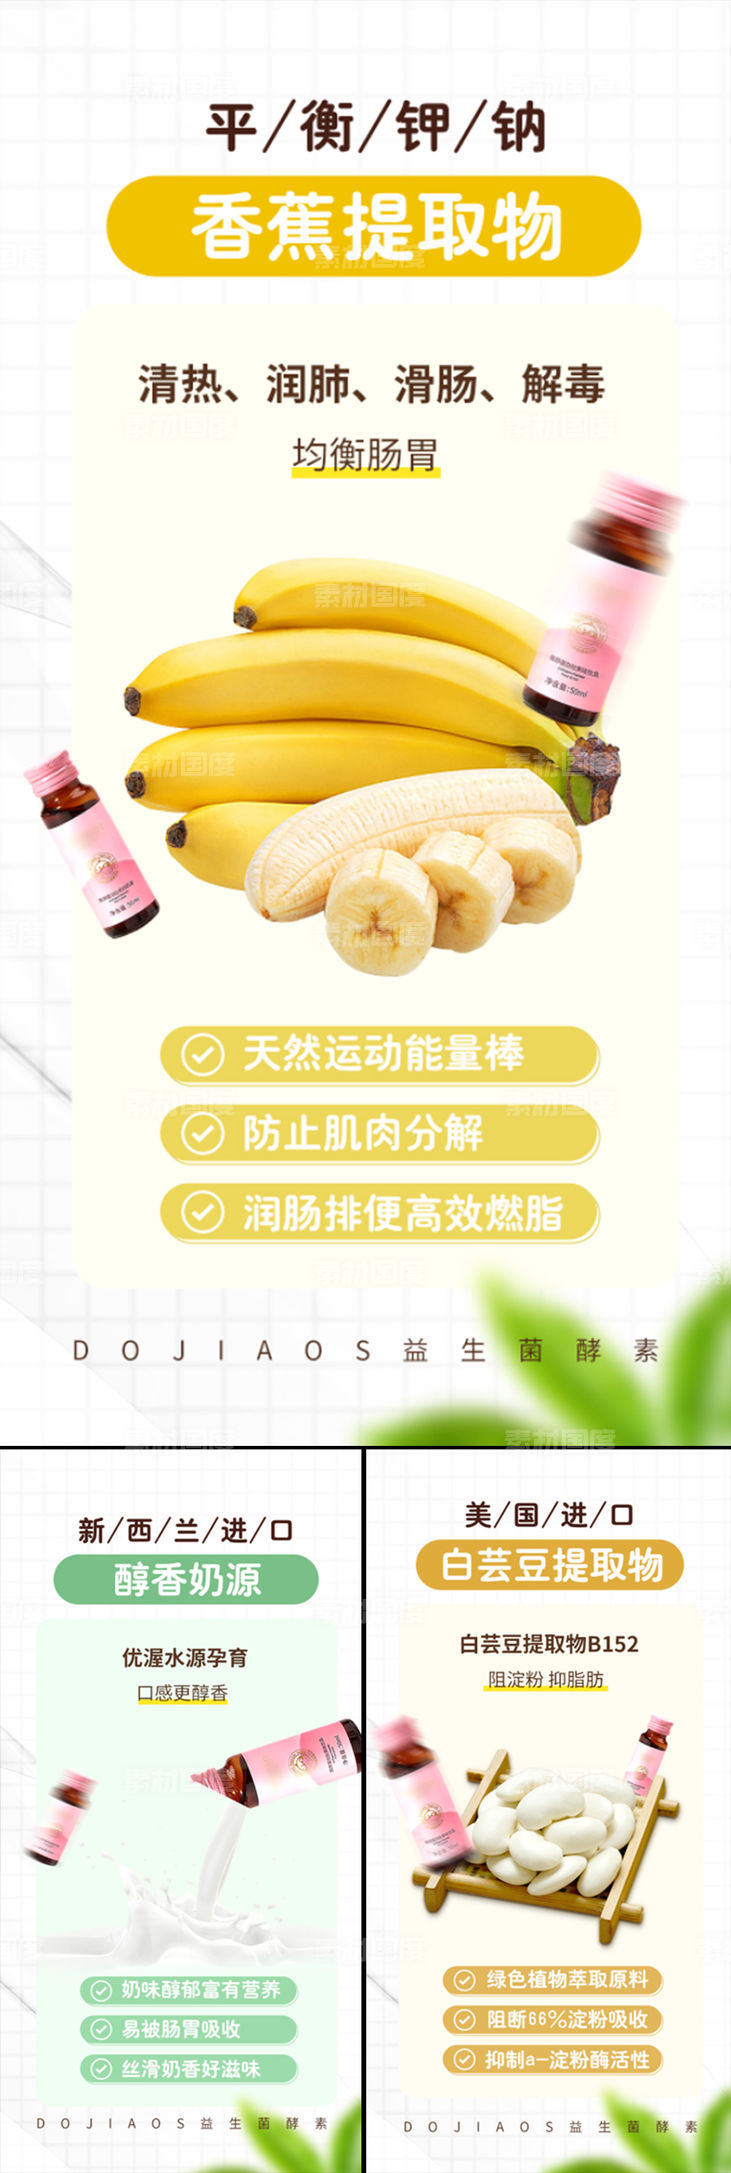 香蕉白芸豆牛奶减肥酵素益生菌海报圈图